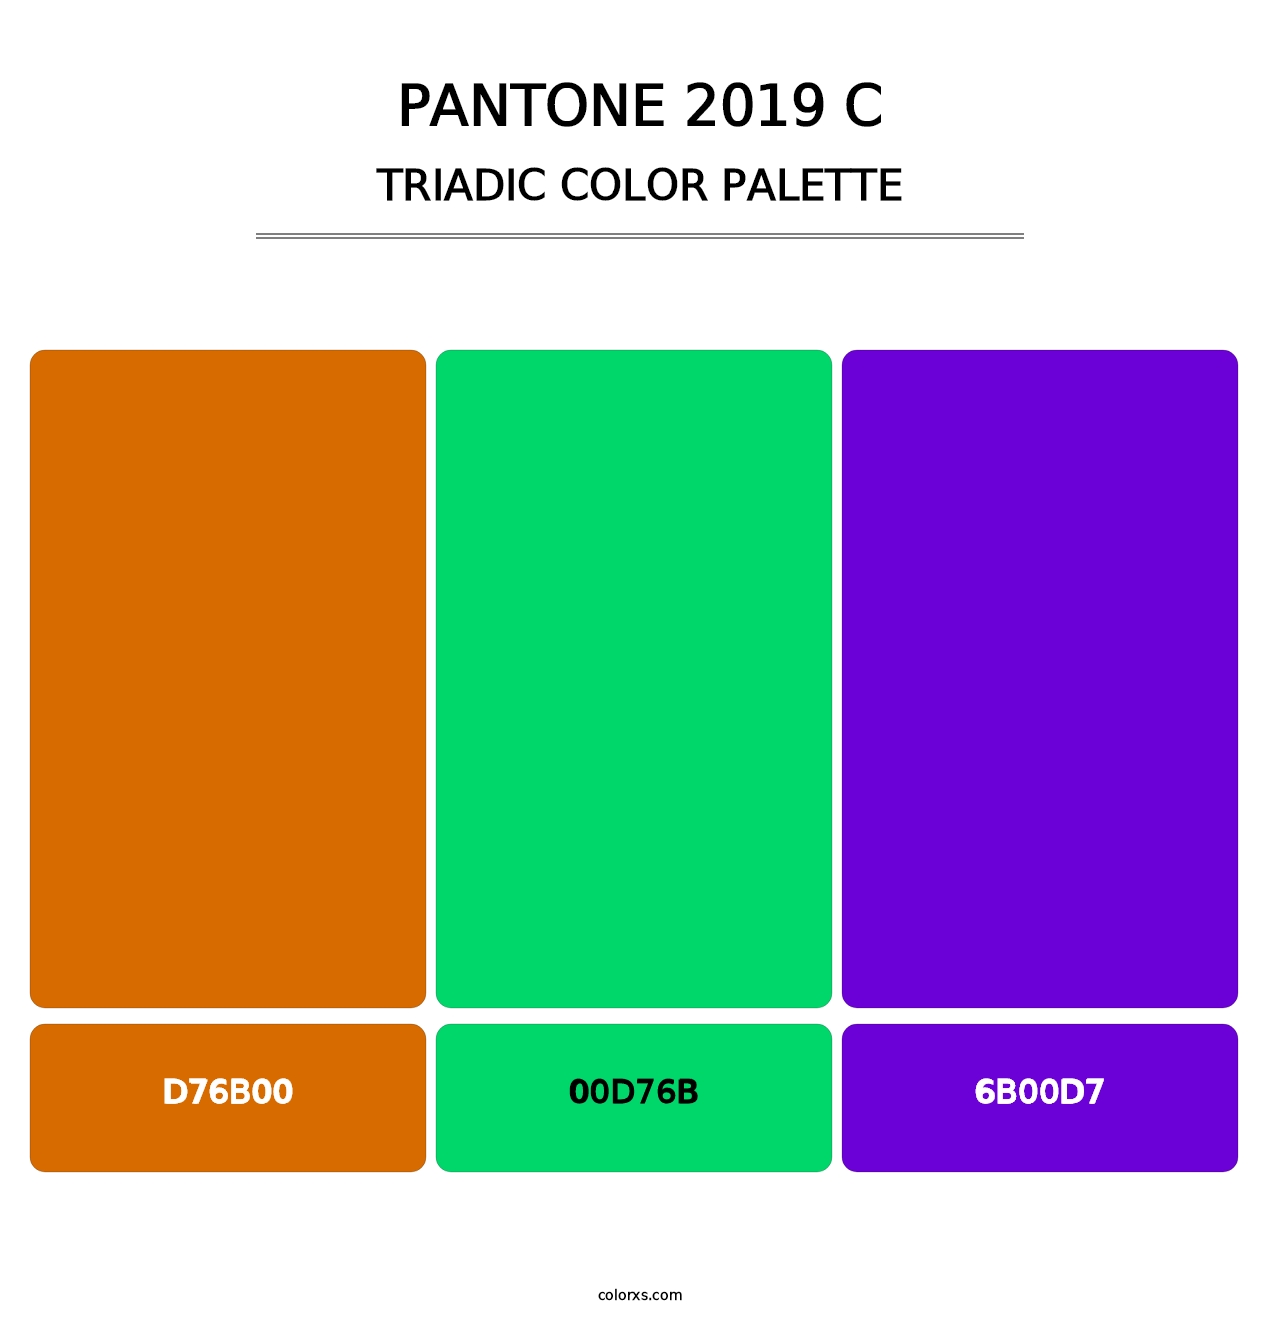 PANTONE 2019 C - Triadic Color Palette